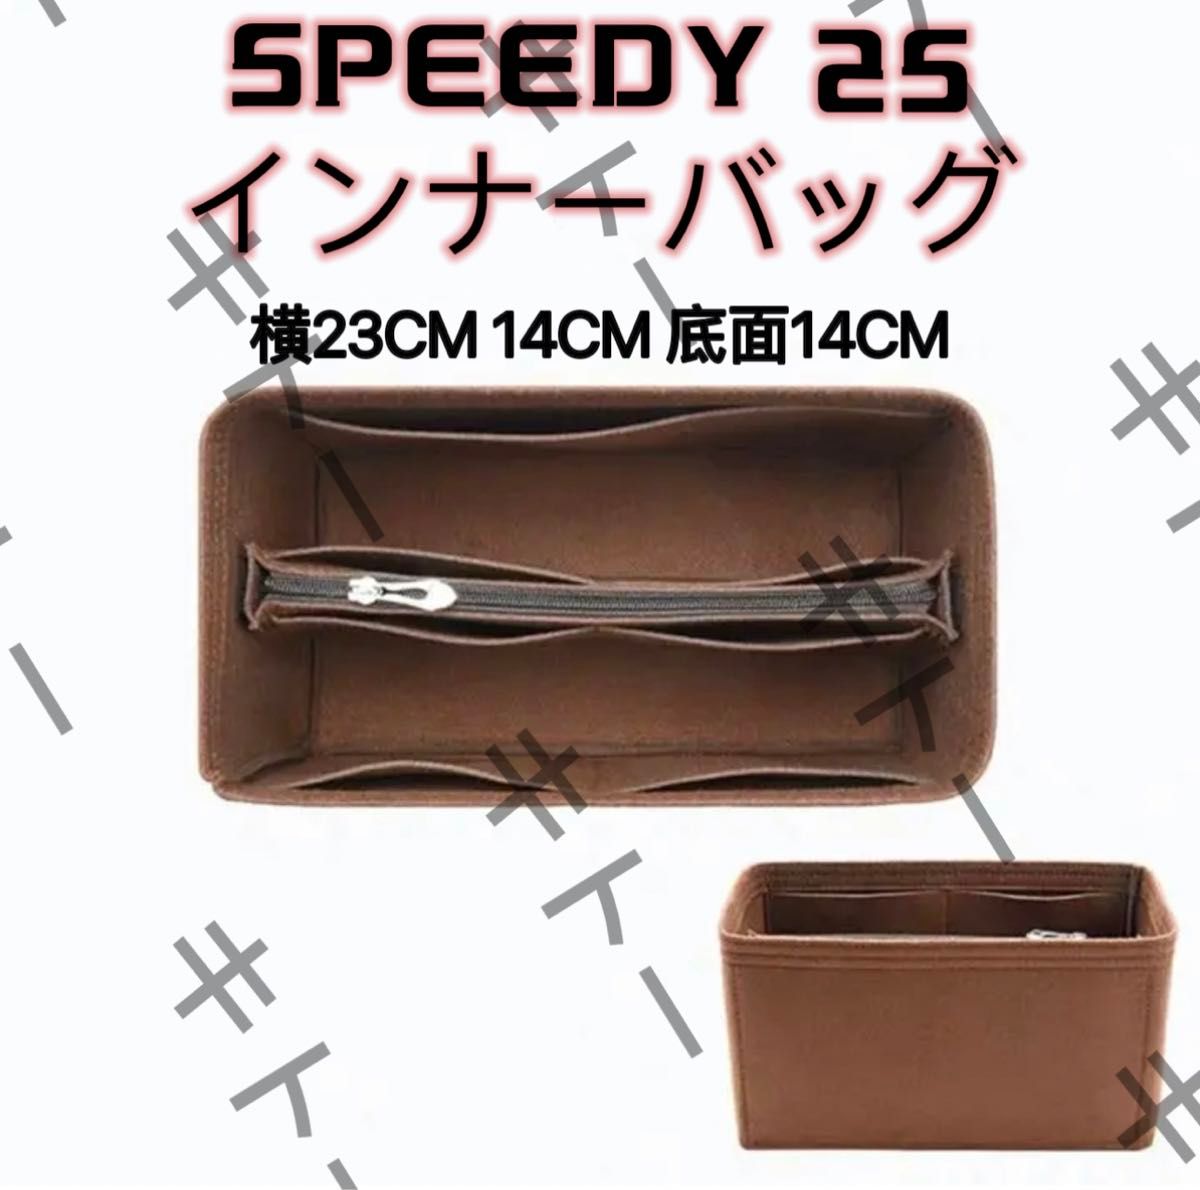 speedyスピーディ25専用バッグインバッグ インナーバッグ  フェルト素材